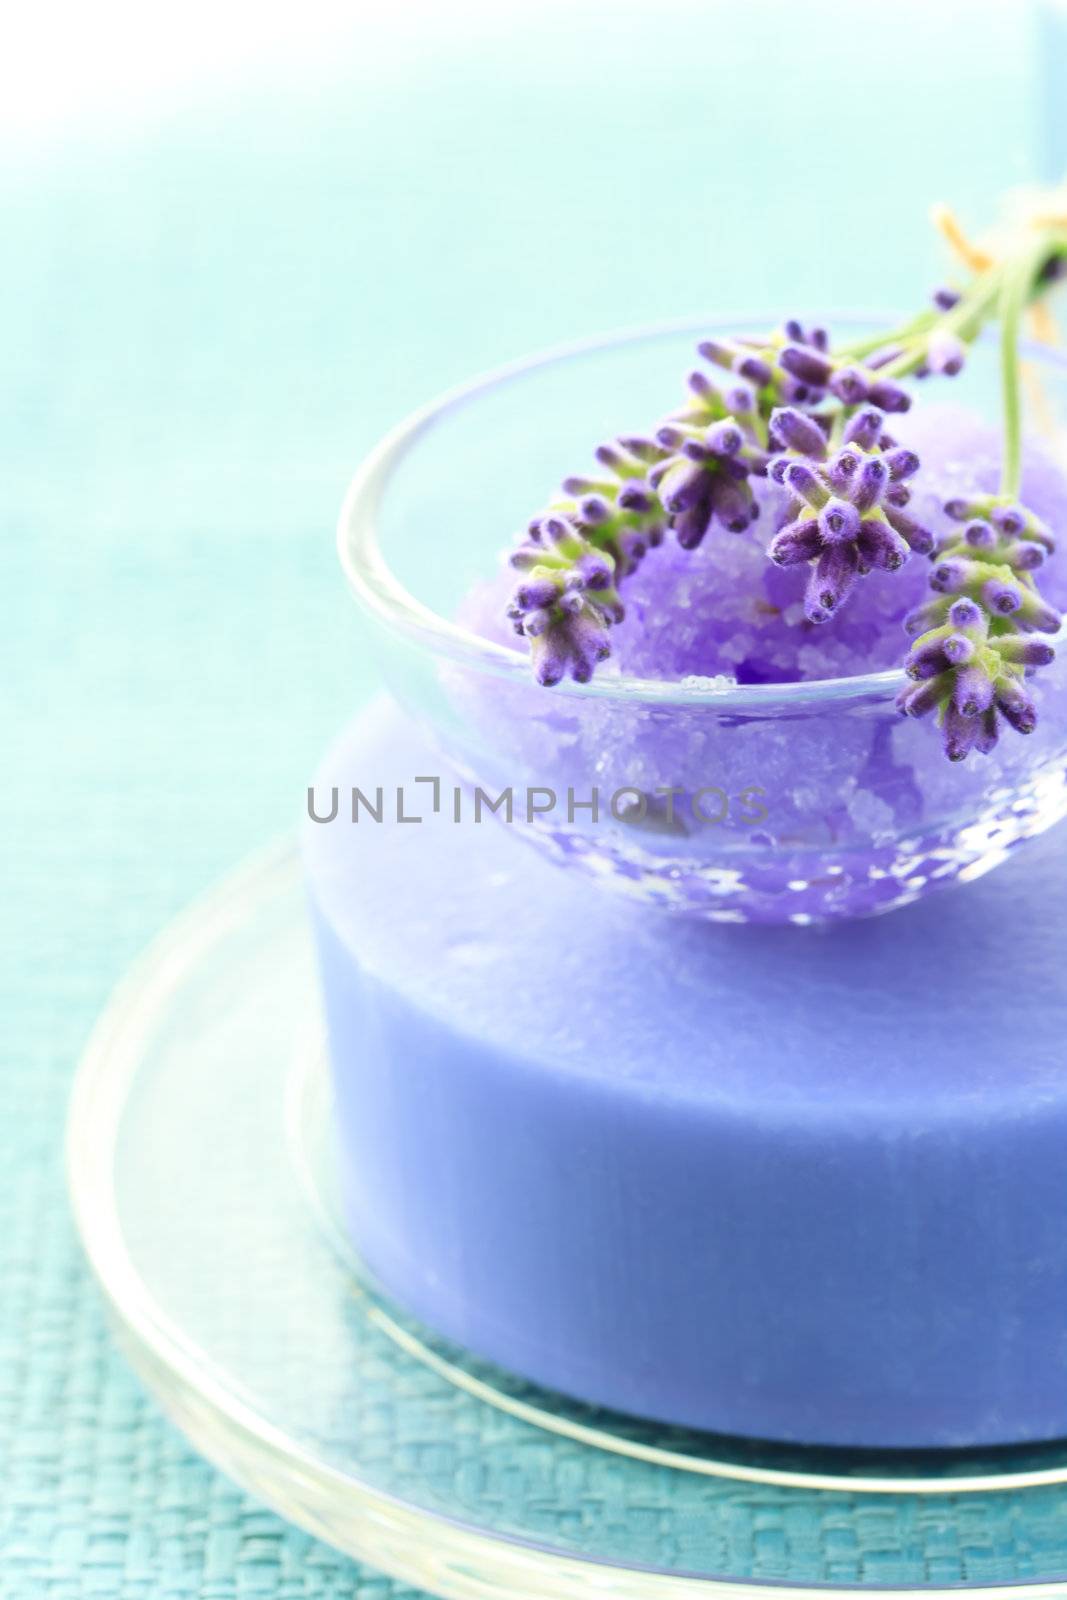 Handmade Soap and Lavender by melpomene